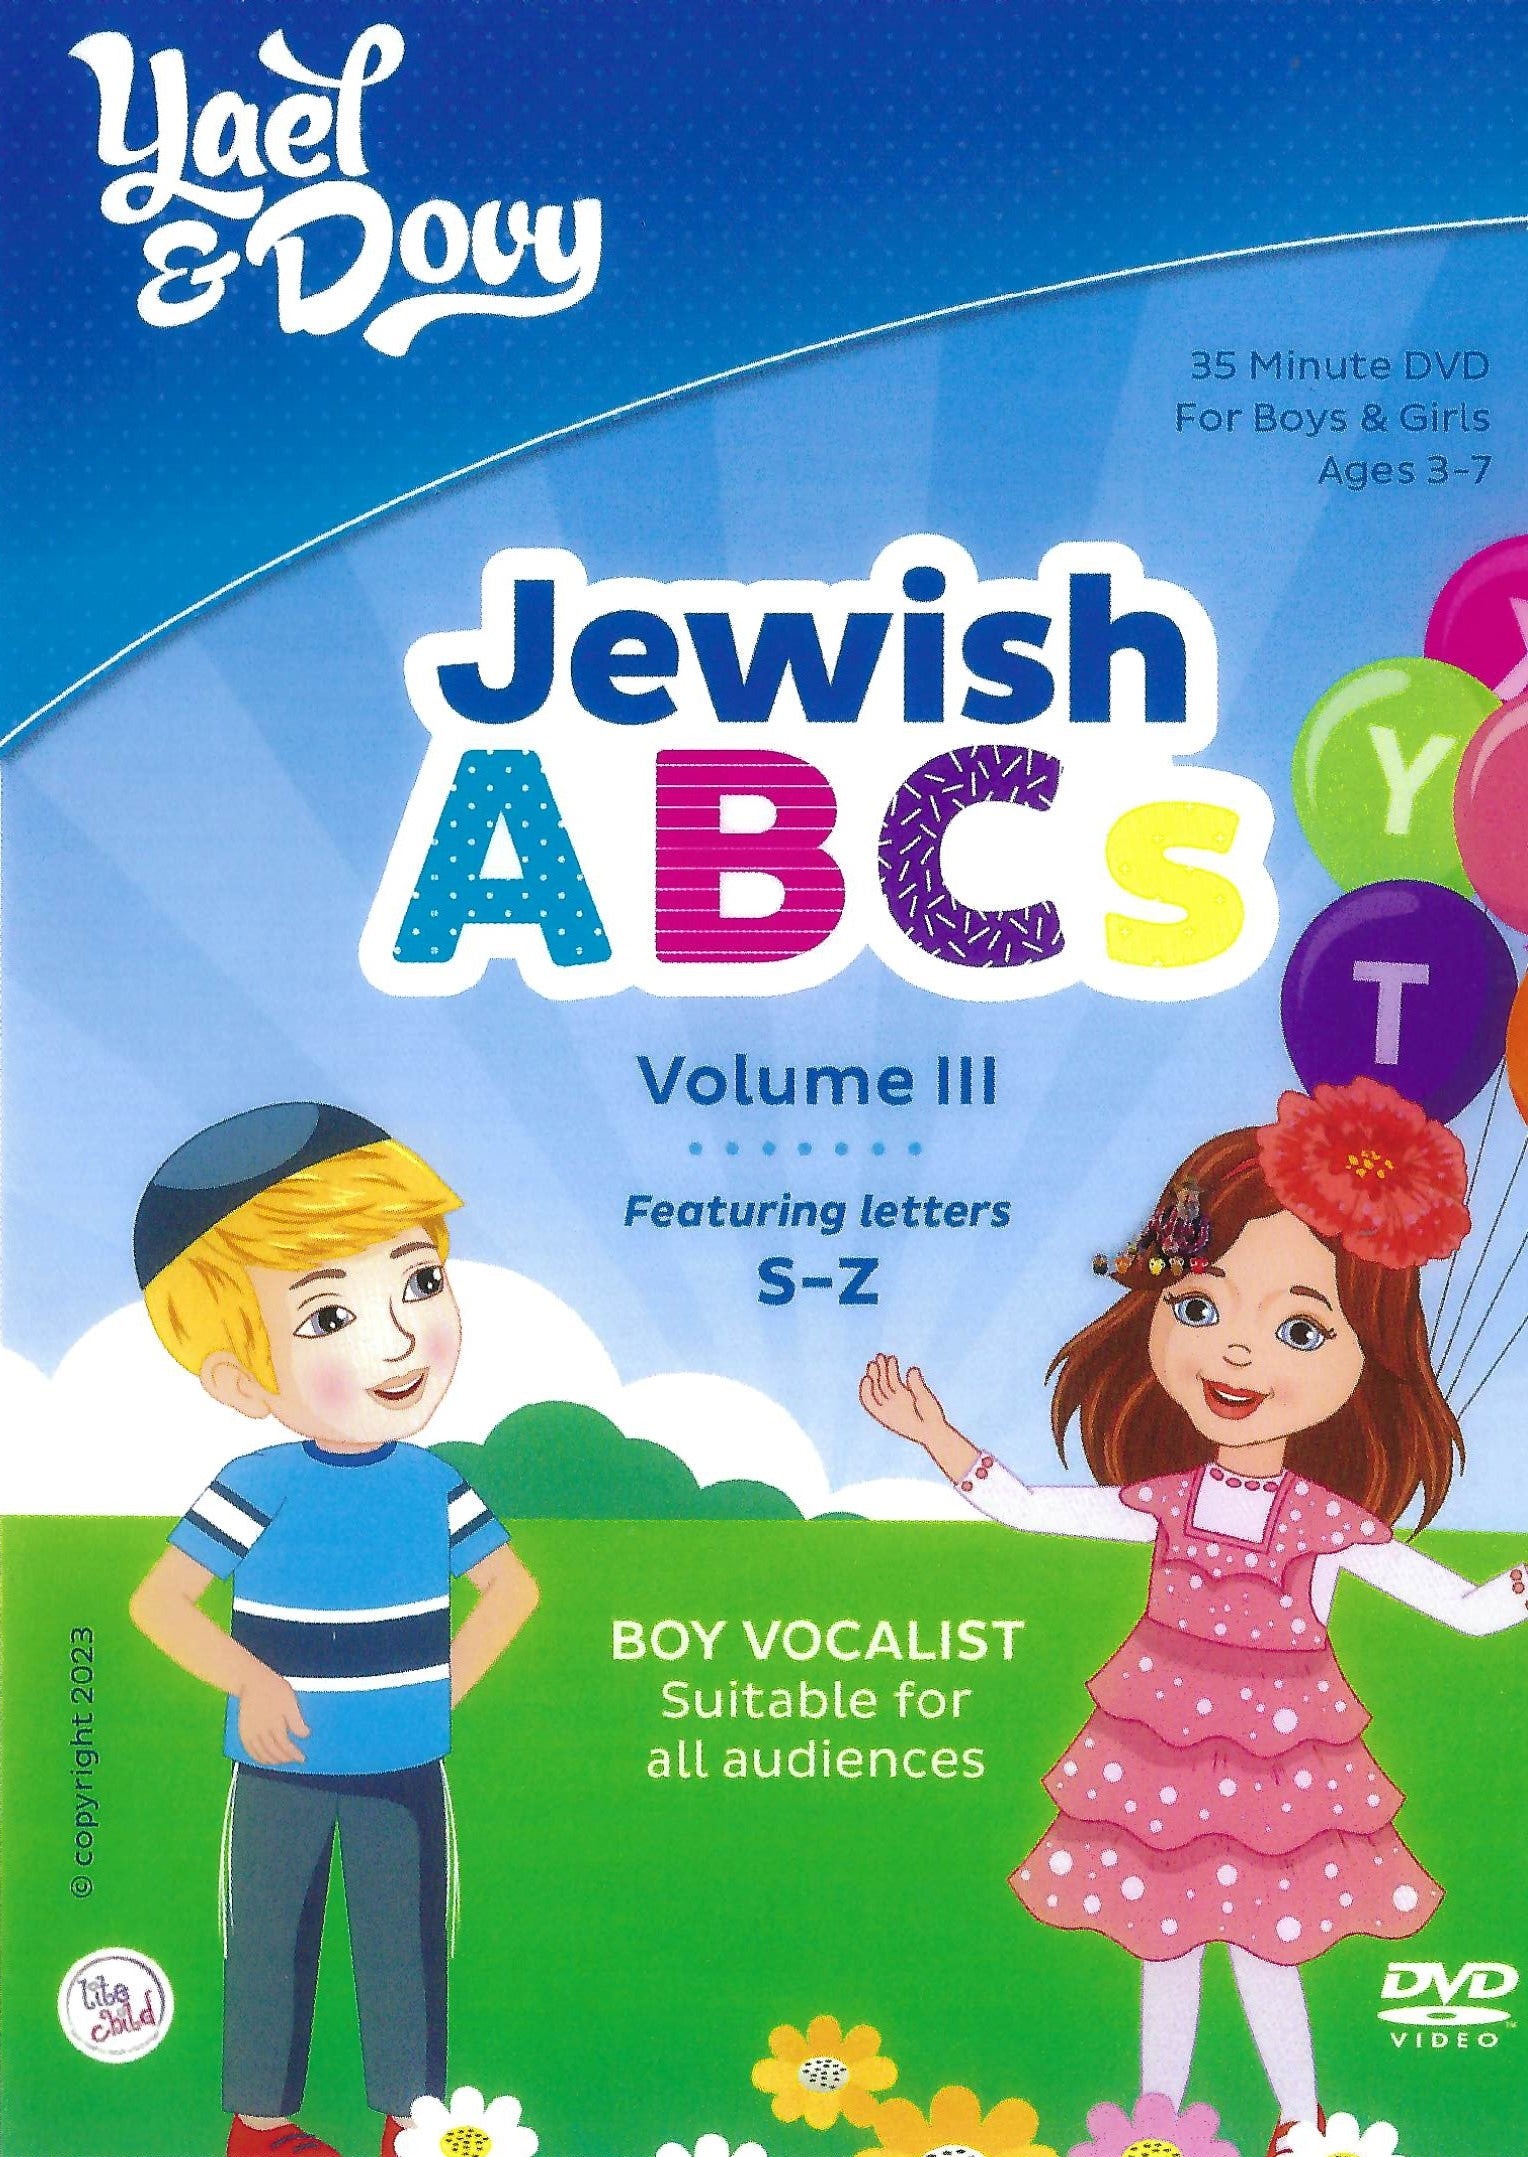 יעל ודובי - Jewish ABCs Volume 3 (וידאו)